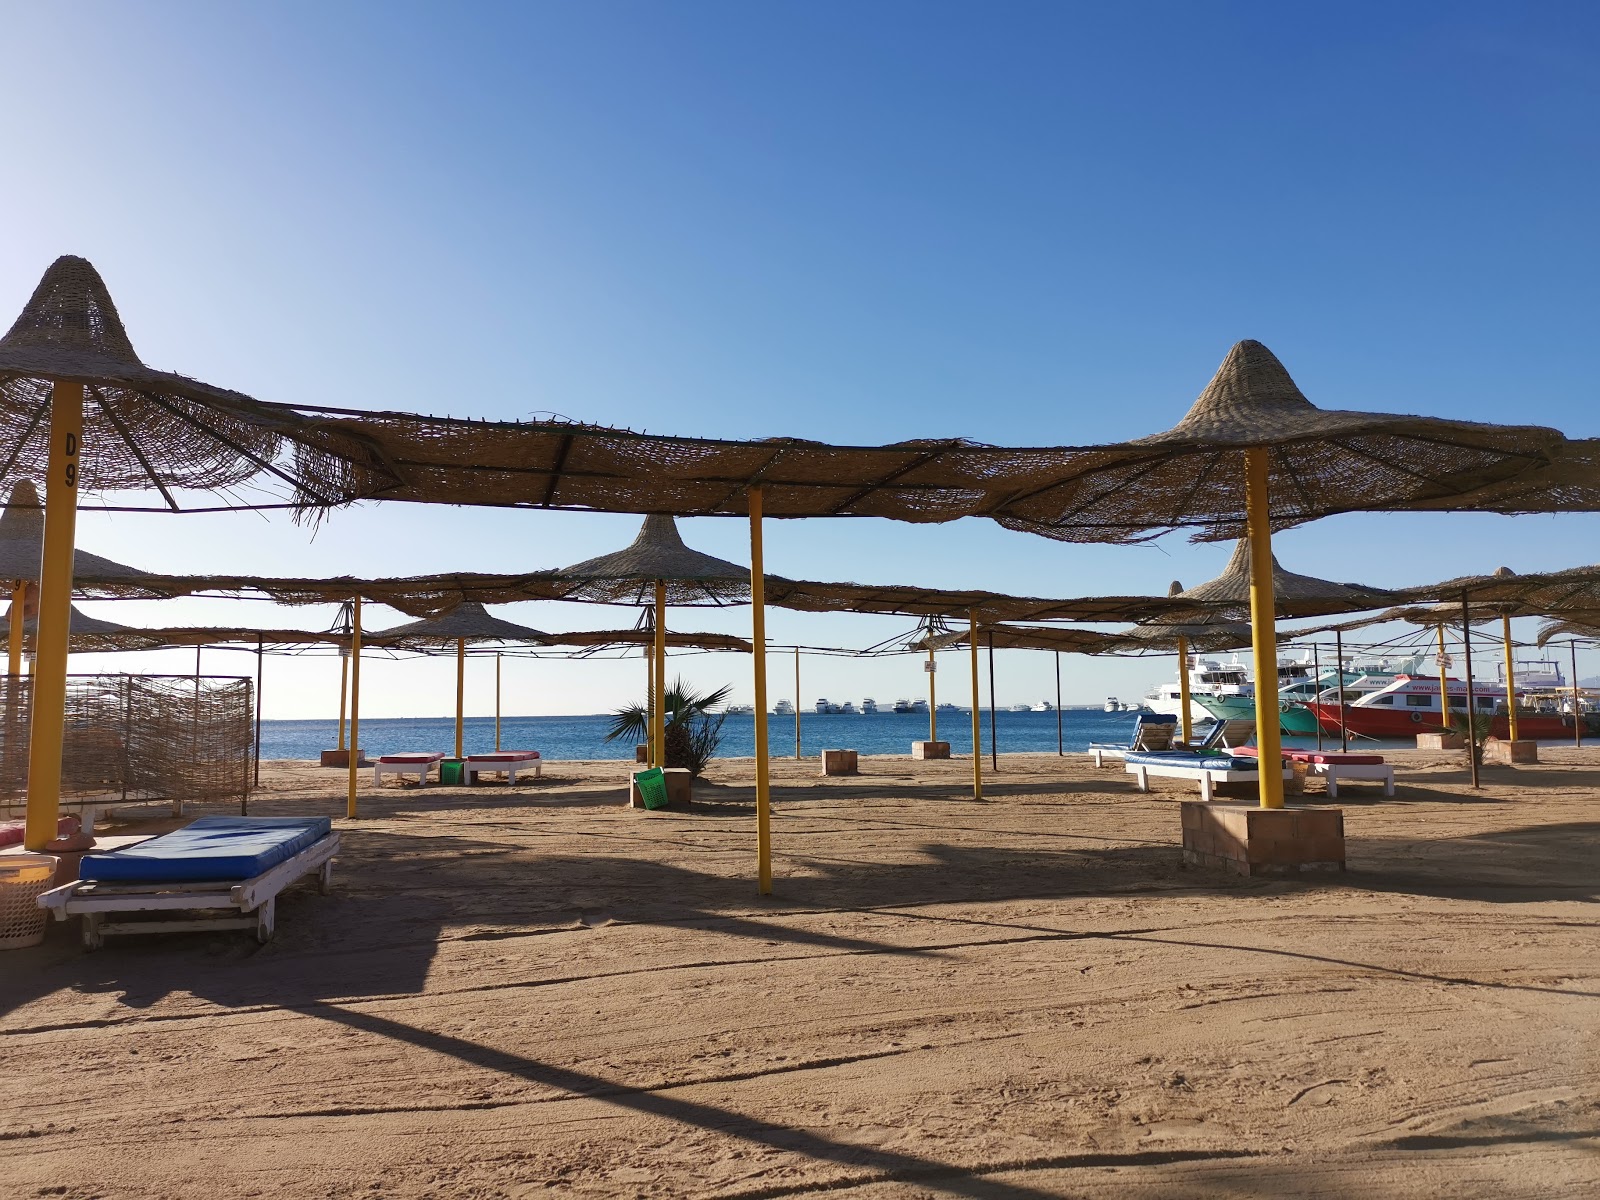 Foto de White Beach Resort - lugar popular entre los conocedores del relax